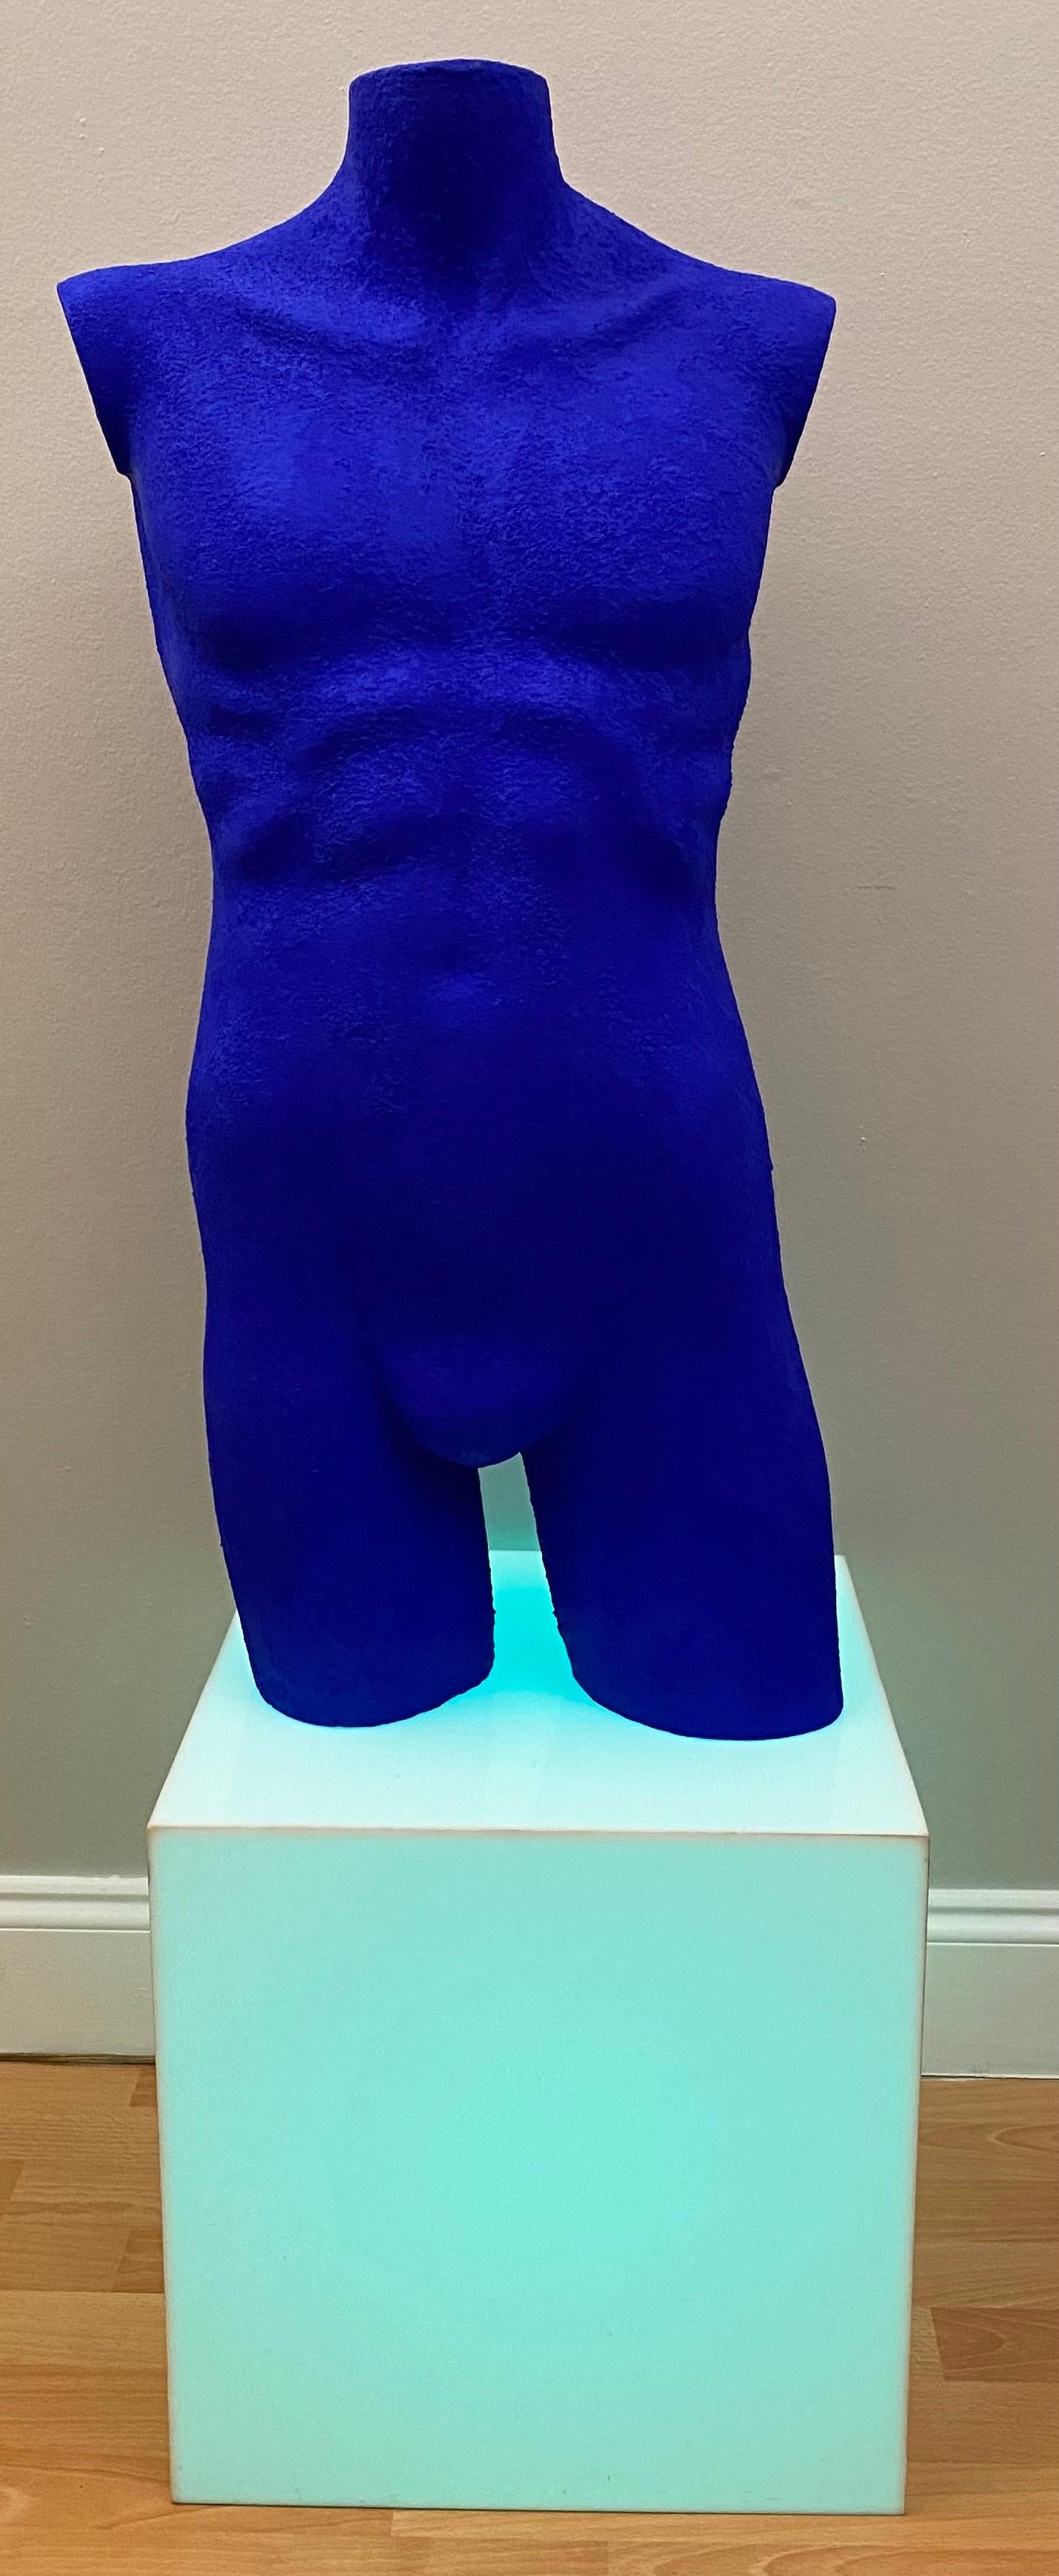 Moderner männlicher Akt aus massivem Lucite, der in Anlehnung an die blauen Kunstwerke von Yves Klein gefertigt wurde. Dieser besondere Blauton, IKB (International Klein Blue) genannt, wurde von Klein selbst entwickelt und patentiert.

Diese